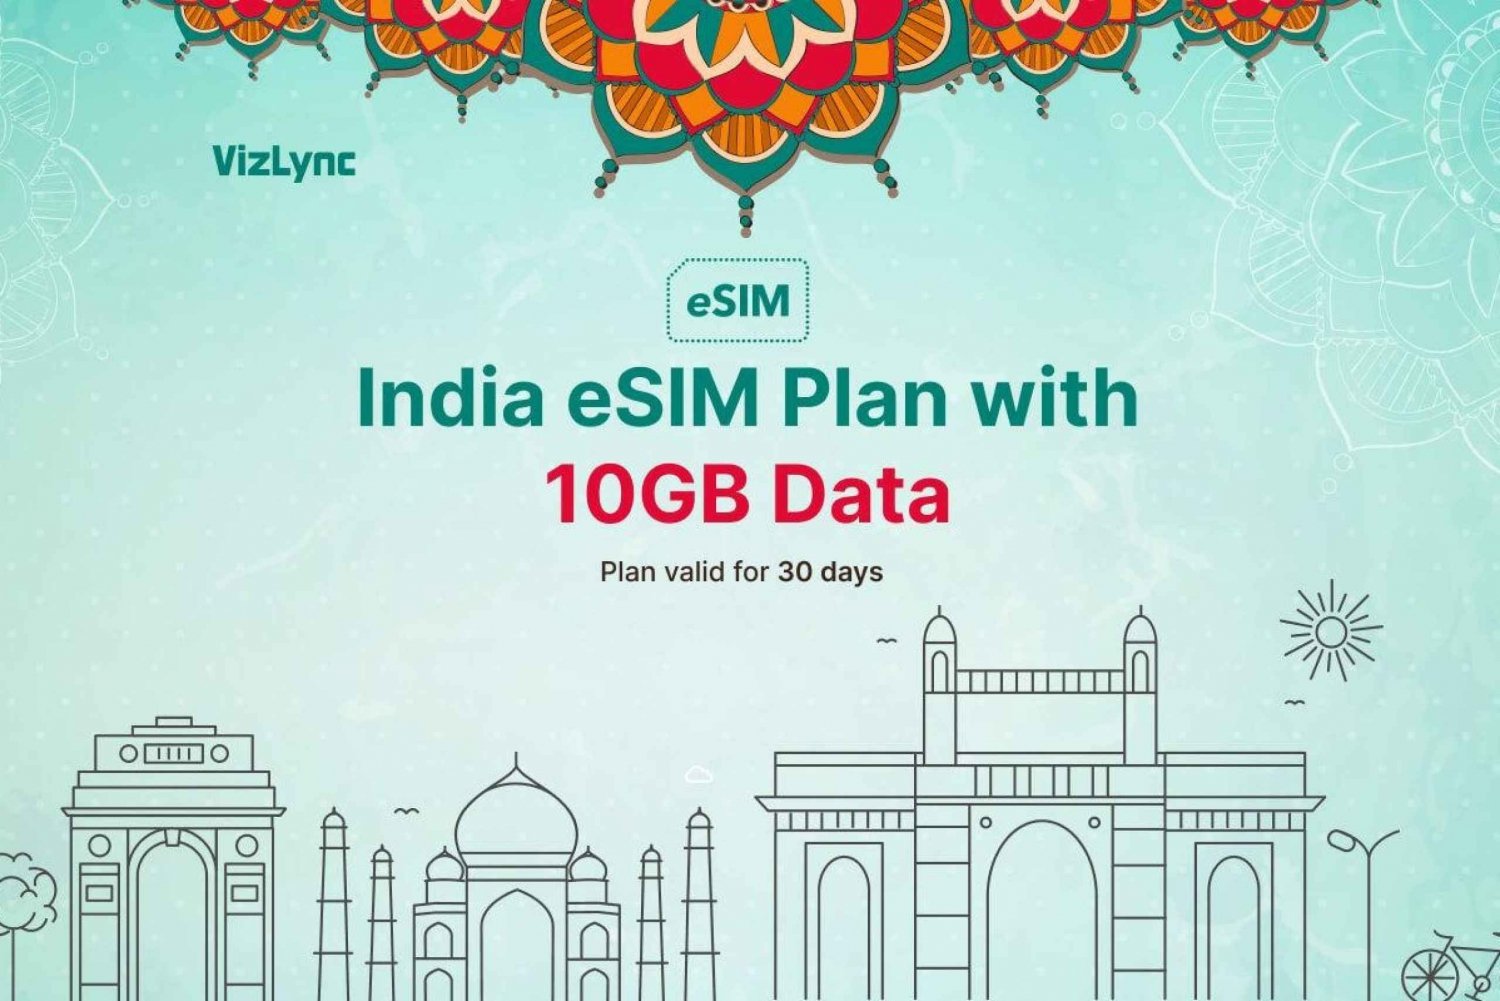 Intia eSIM Datasuunnitelma, jossa on supernopea Internet matkustamiseen